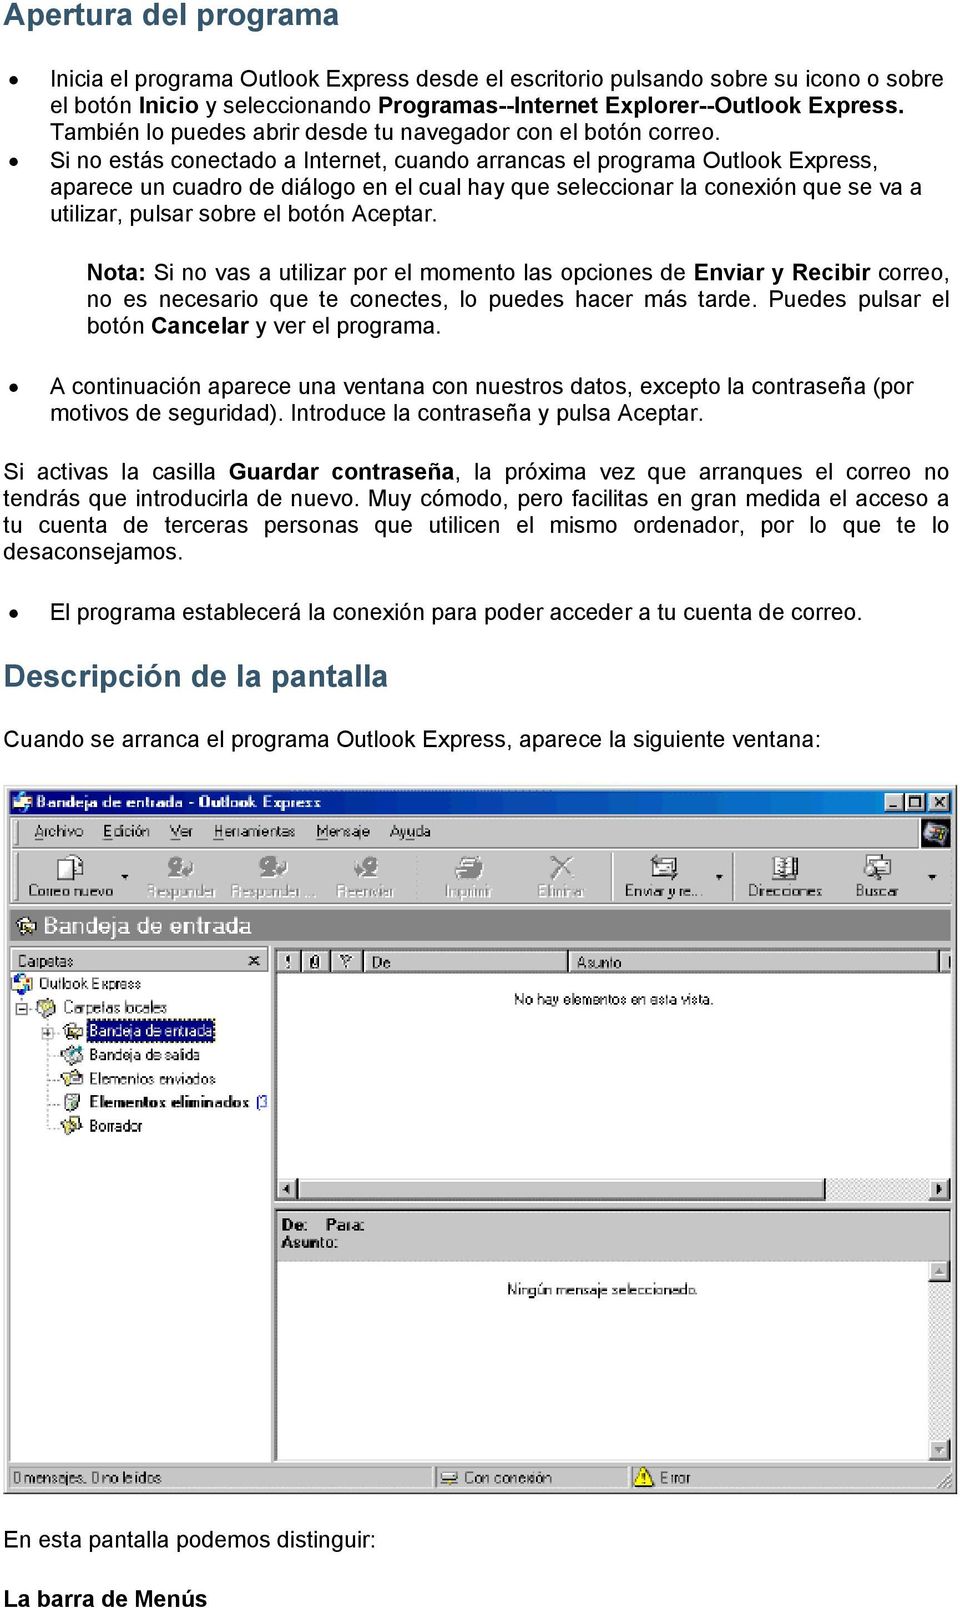 Si no estás conectado a Internet, cuando arrancas el programa Outlook Express, aparece un cuadro de diálogo en el cual hay que seleccionar la conexión que se va a utilizar, pulsar sobre el botón